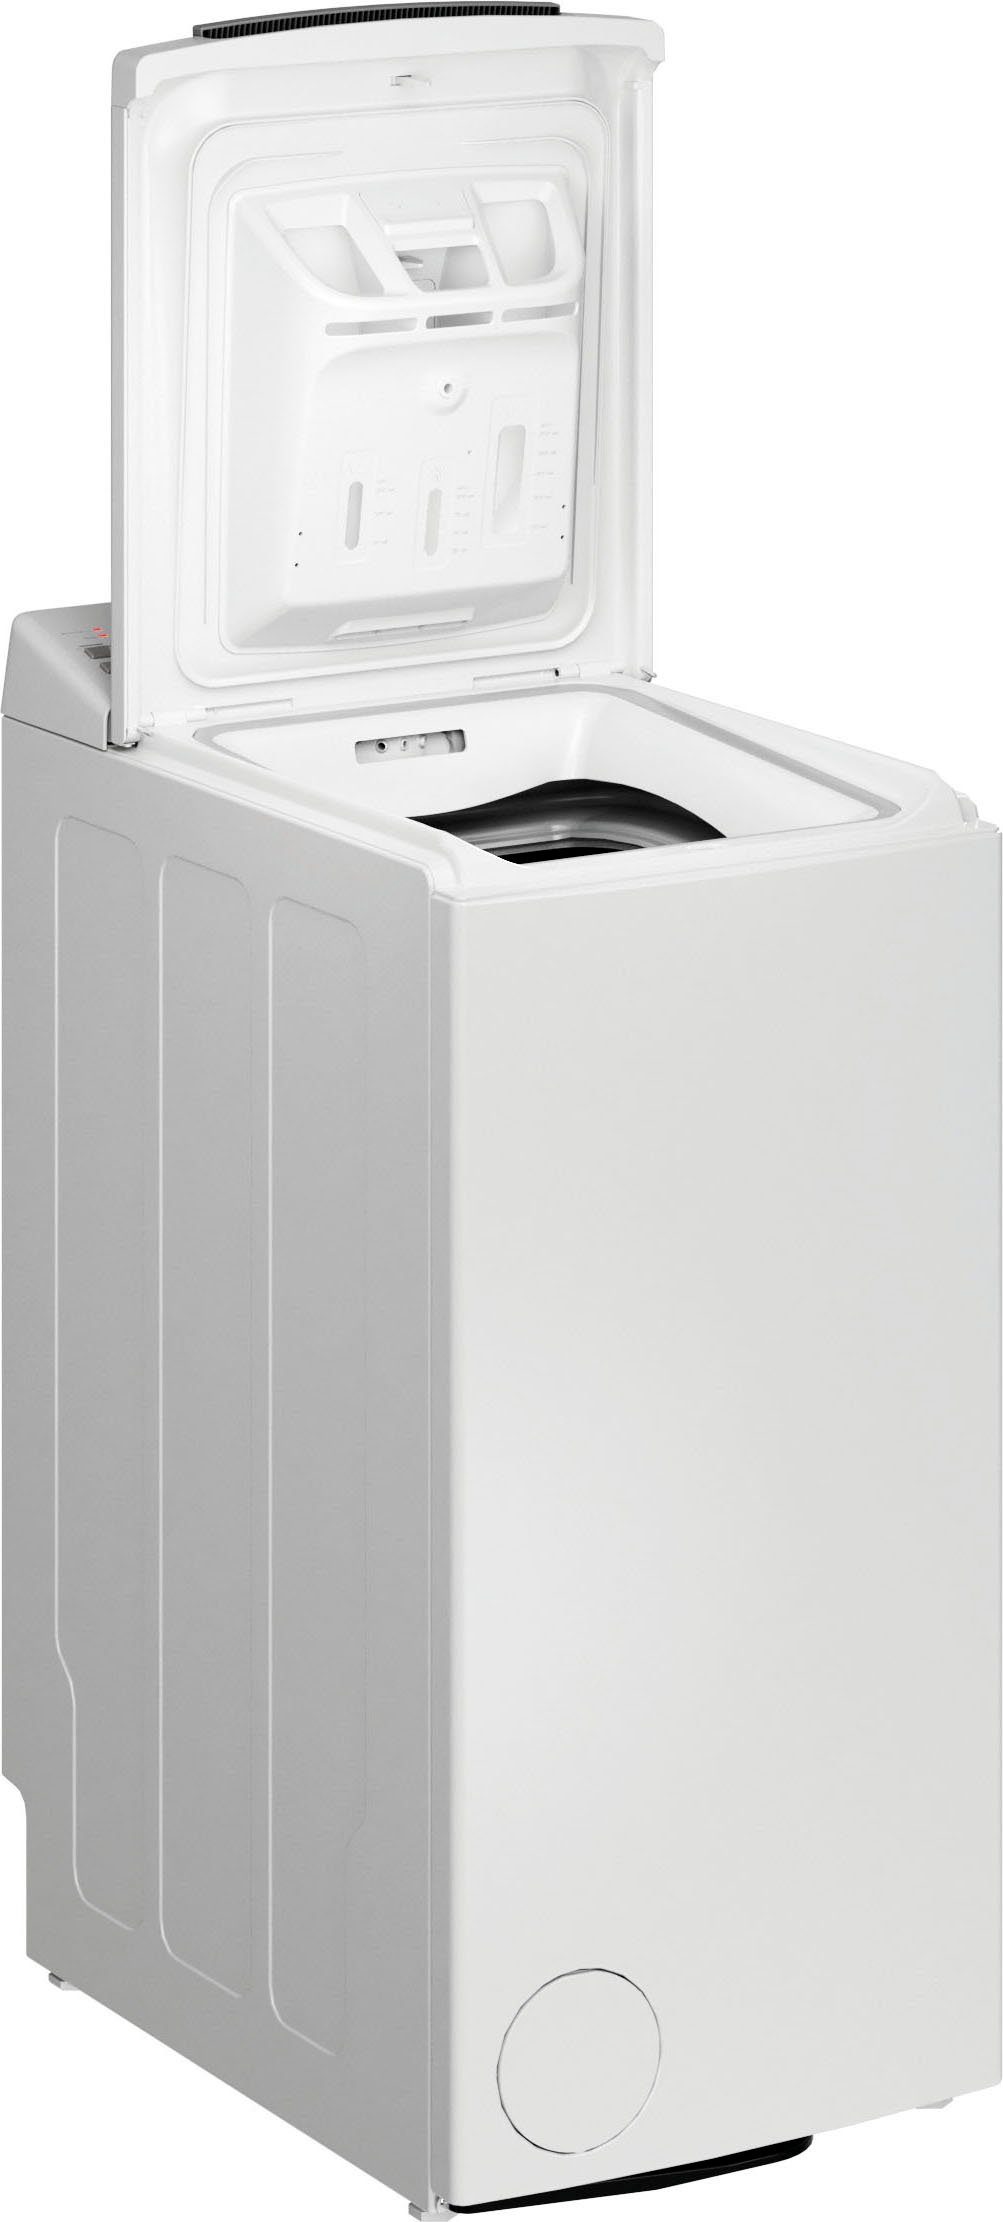 BAUKNECHT Waschmaschine Toplader WMT 6513 U/min B5, 6 kg, 1200